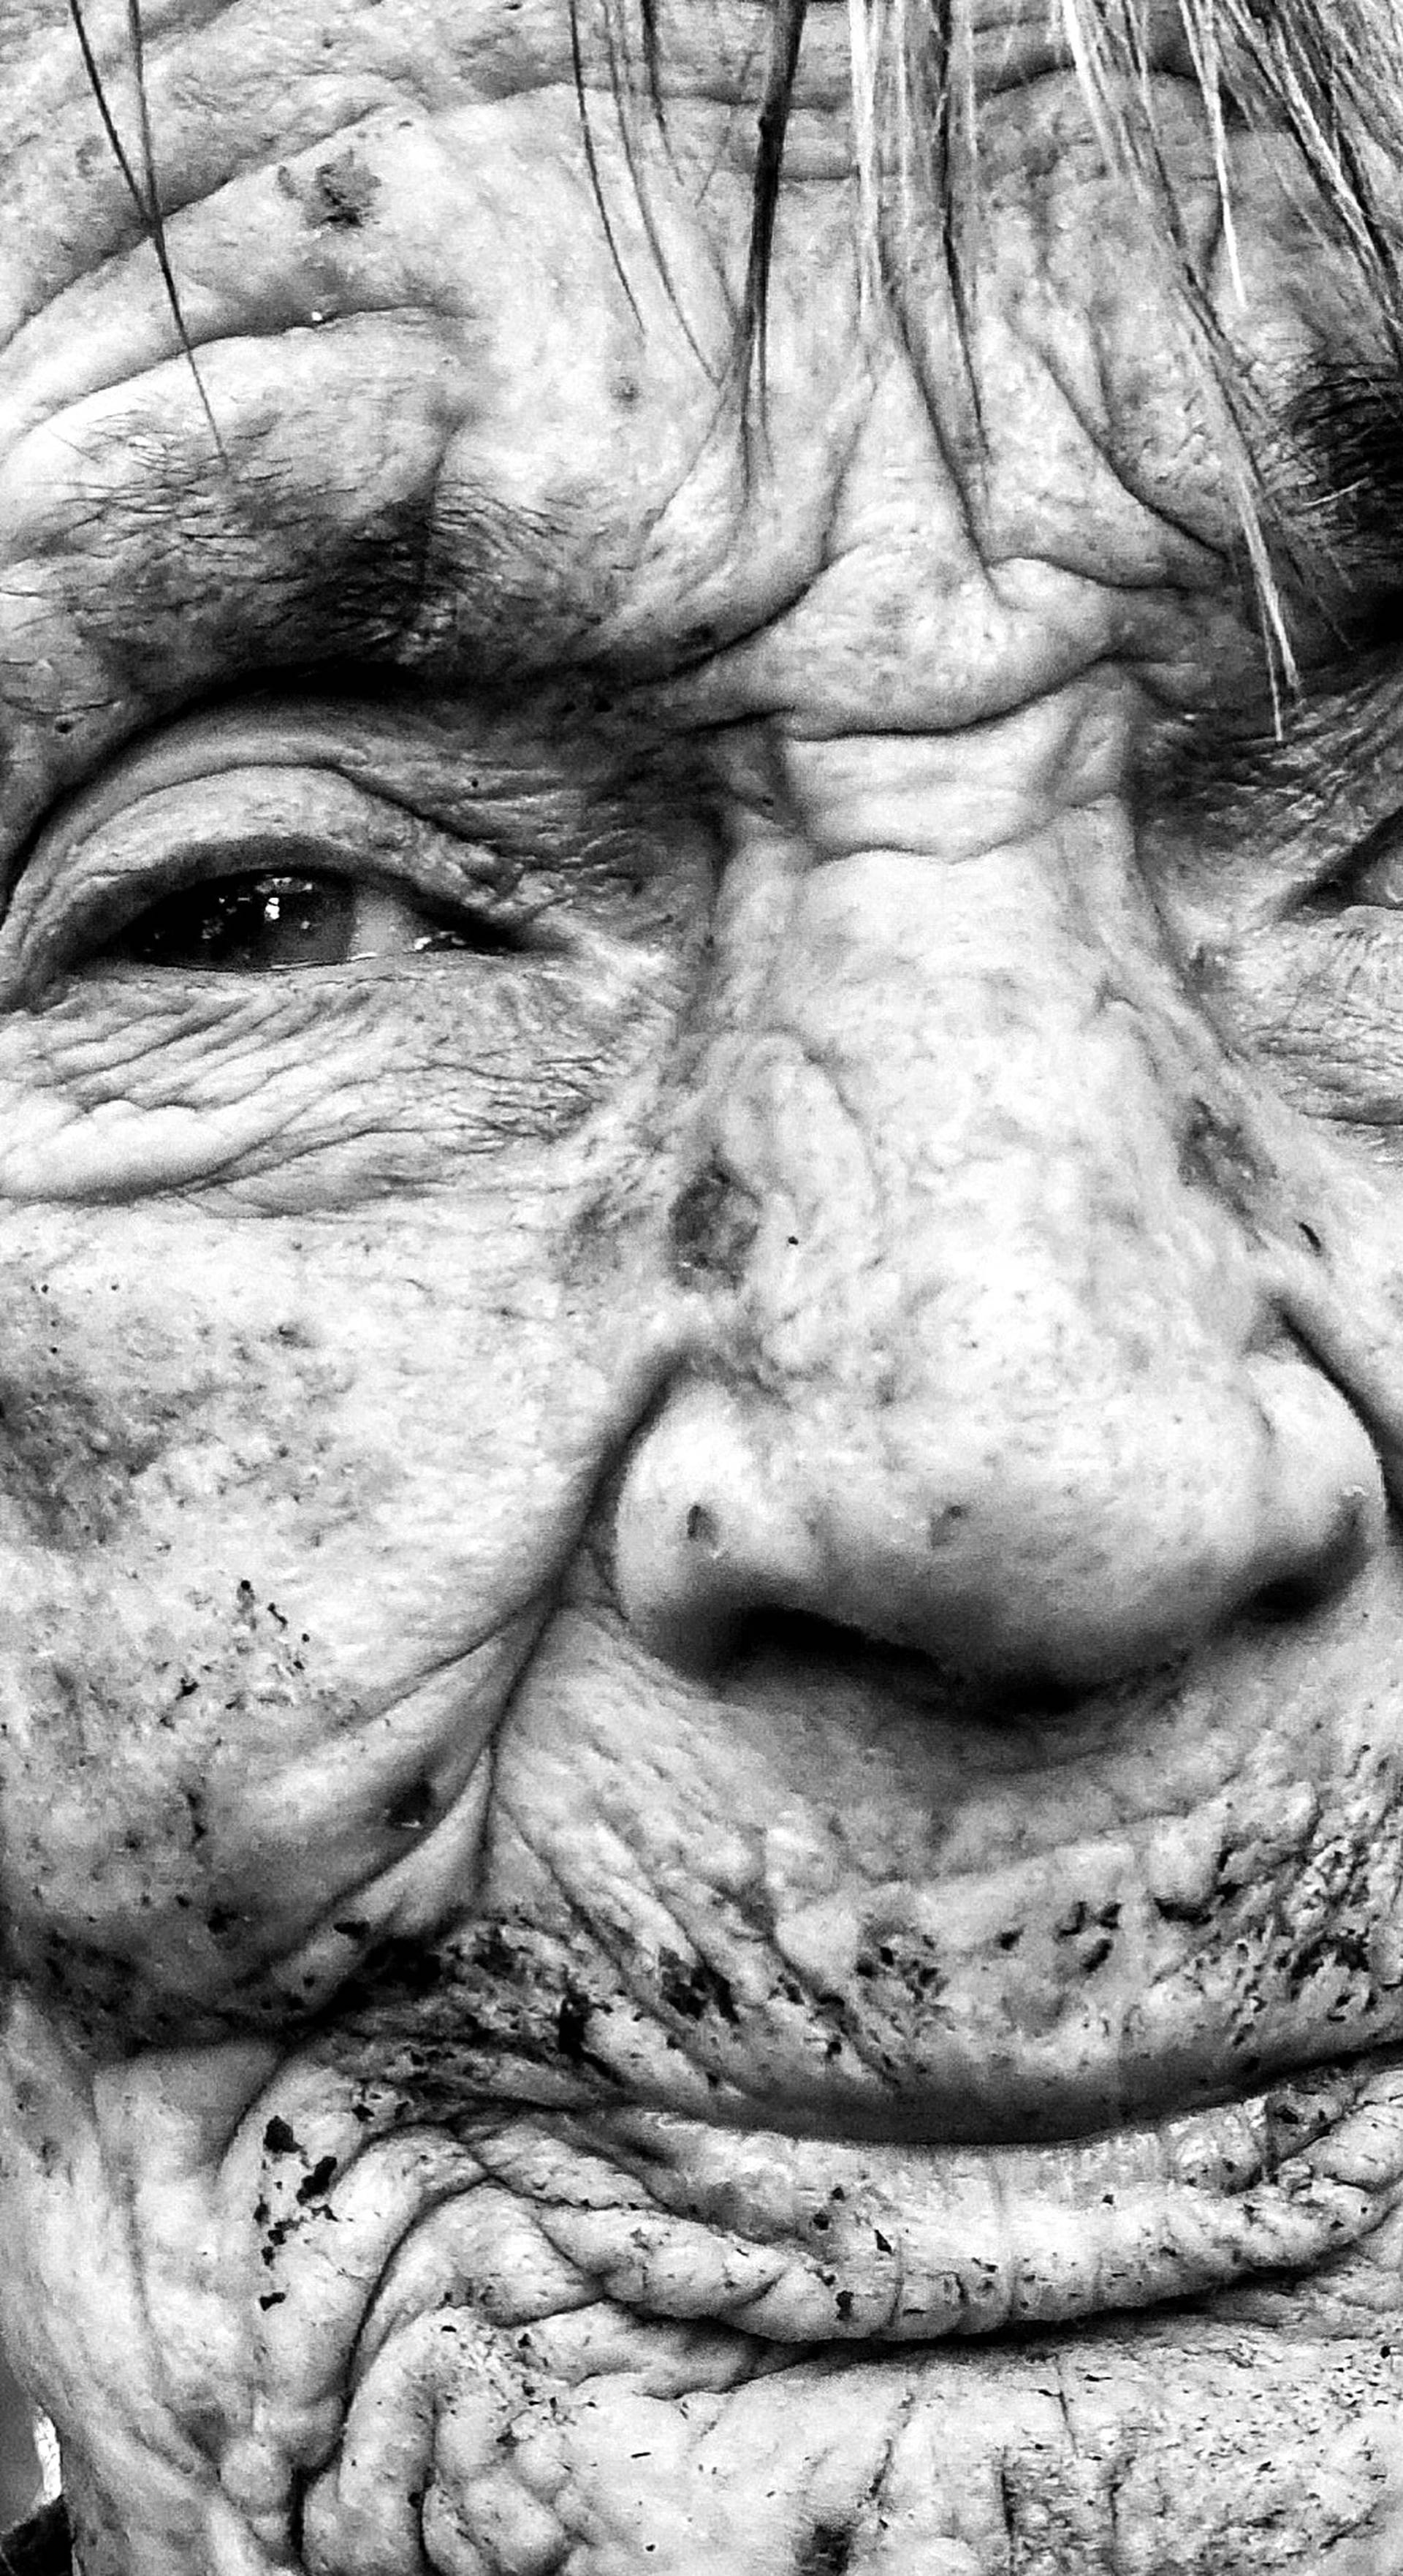 Baka Ljubica (83) izgubila bitku za život zbog siromaštva i sepse